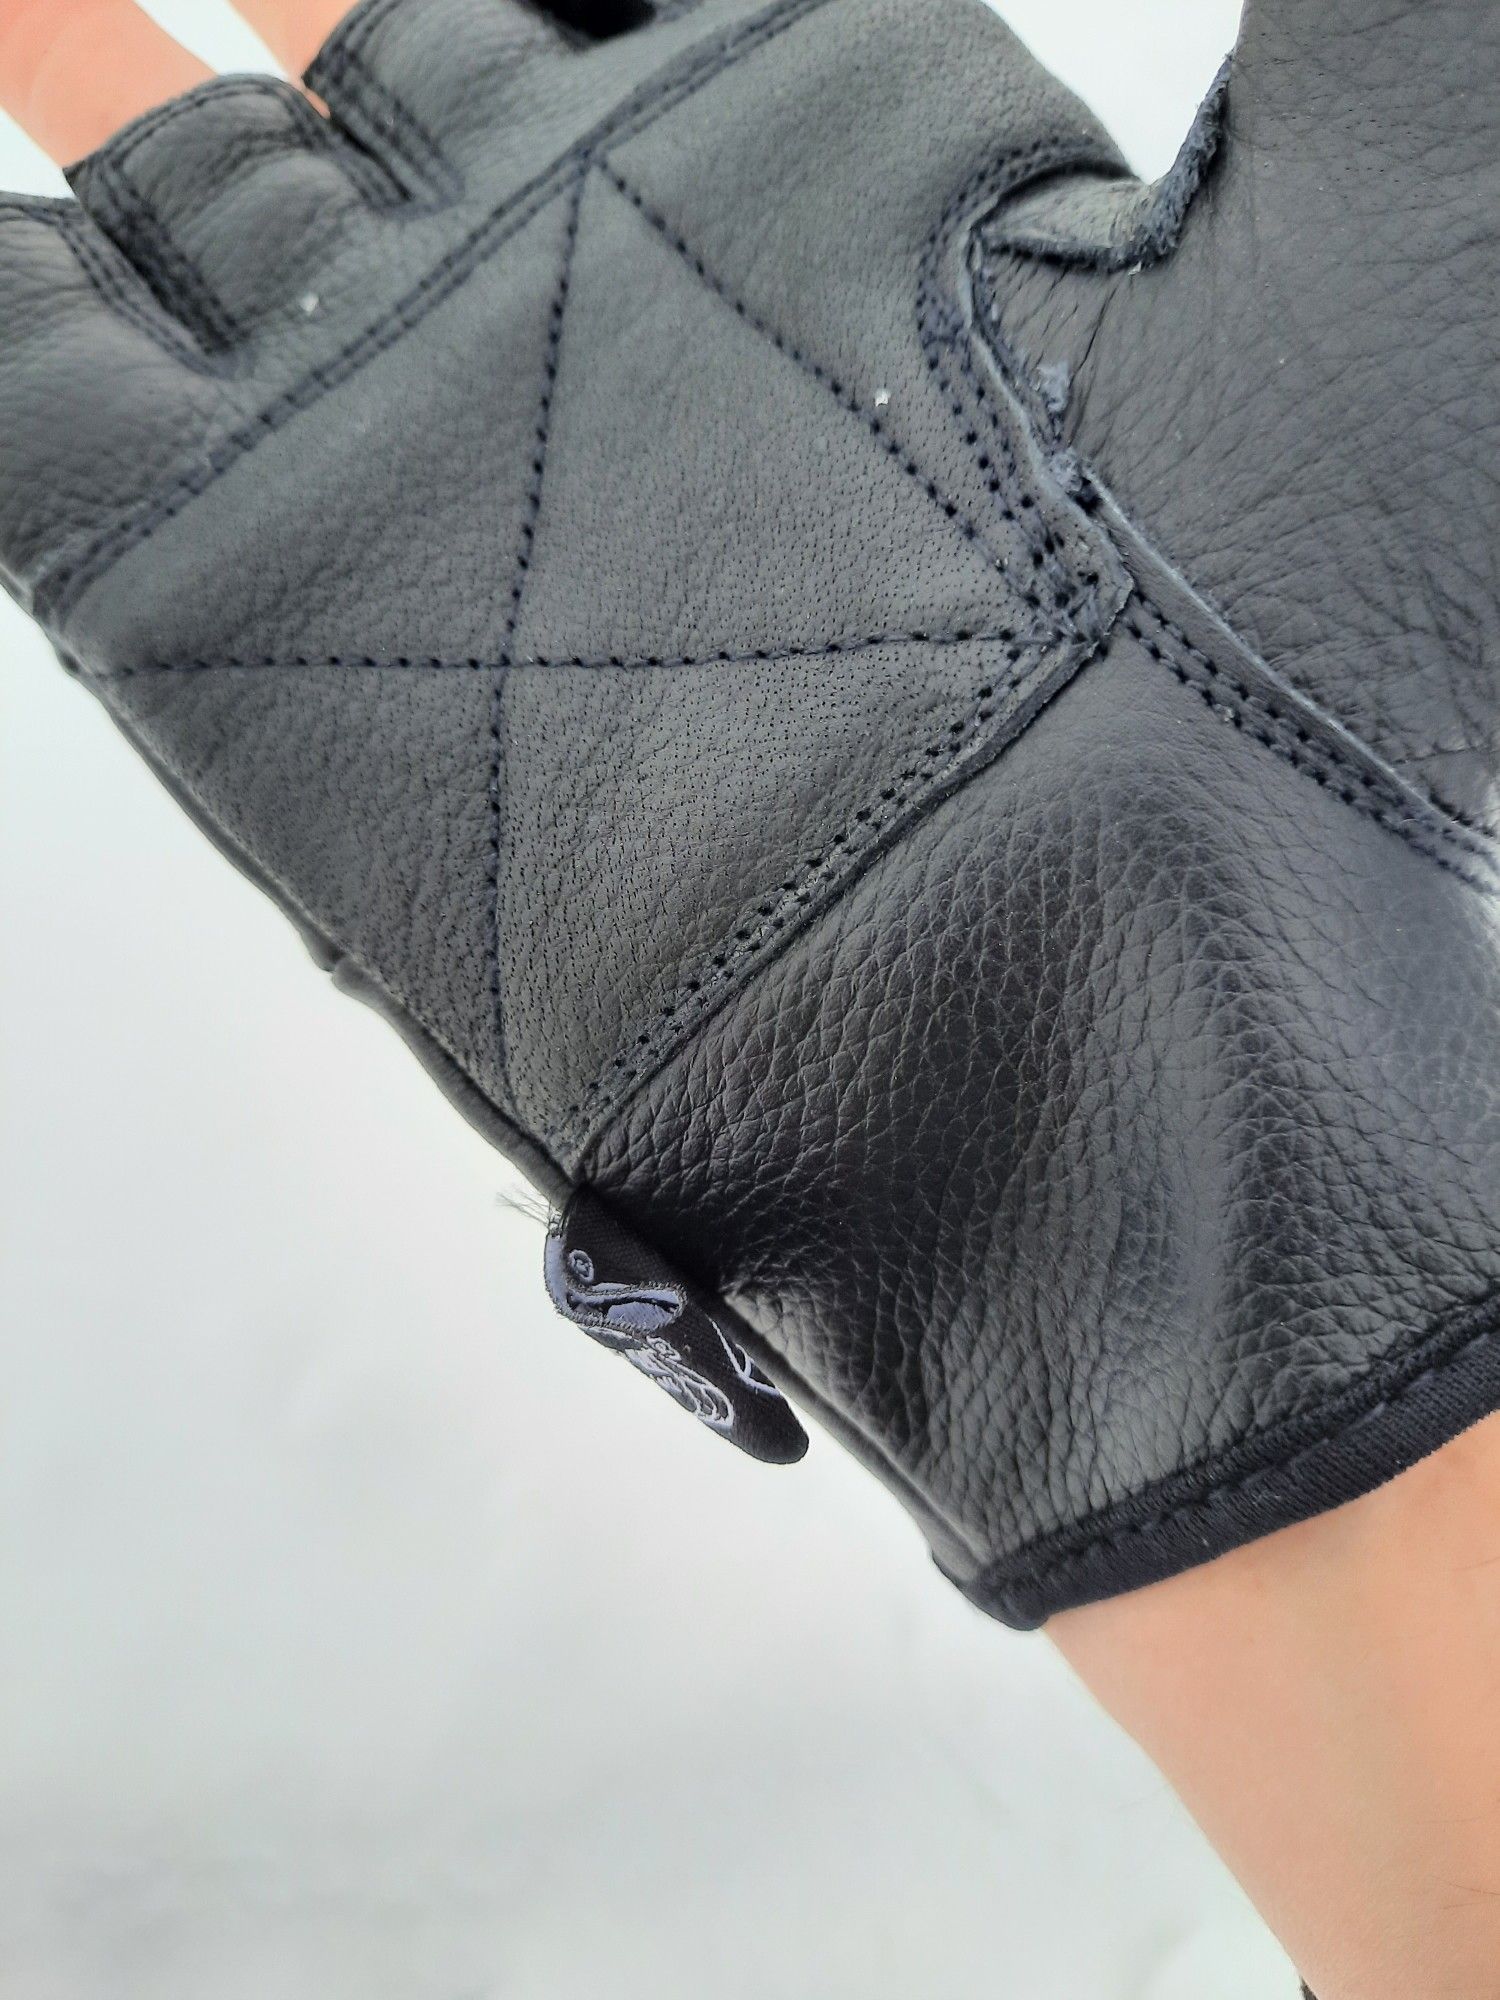 Skórzane rękawiczki bez palców Deluxe czarne XL